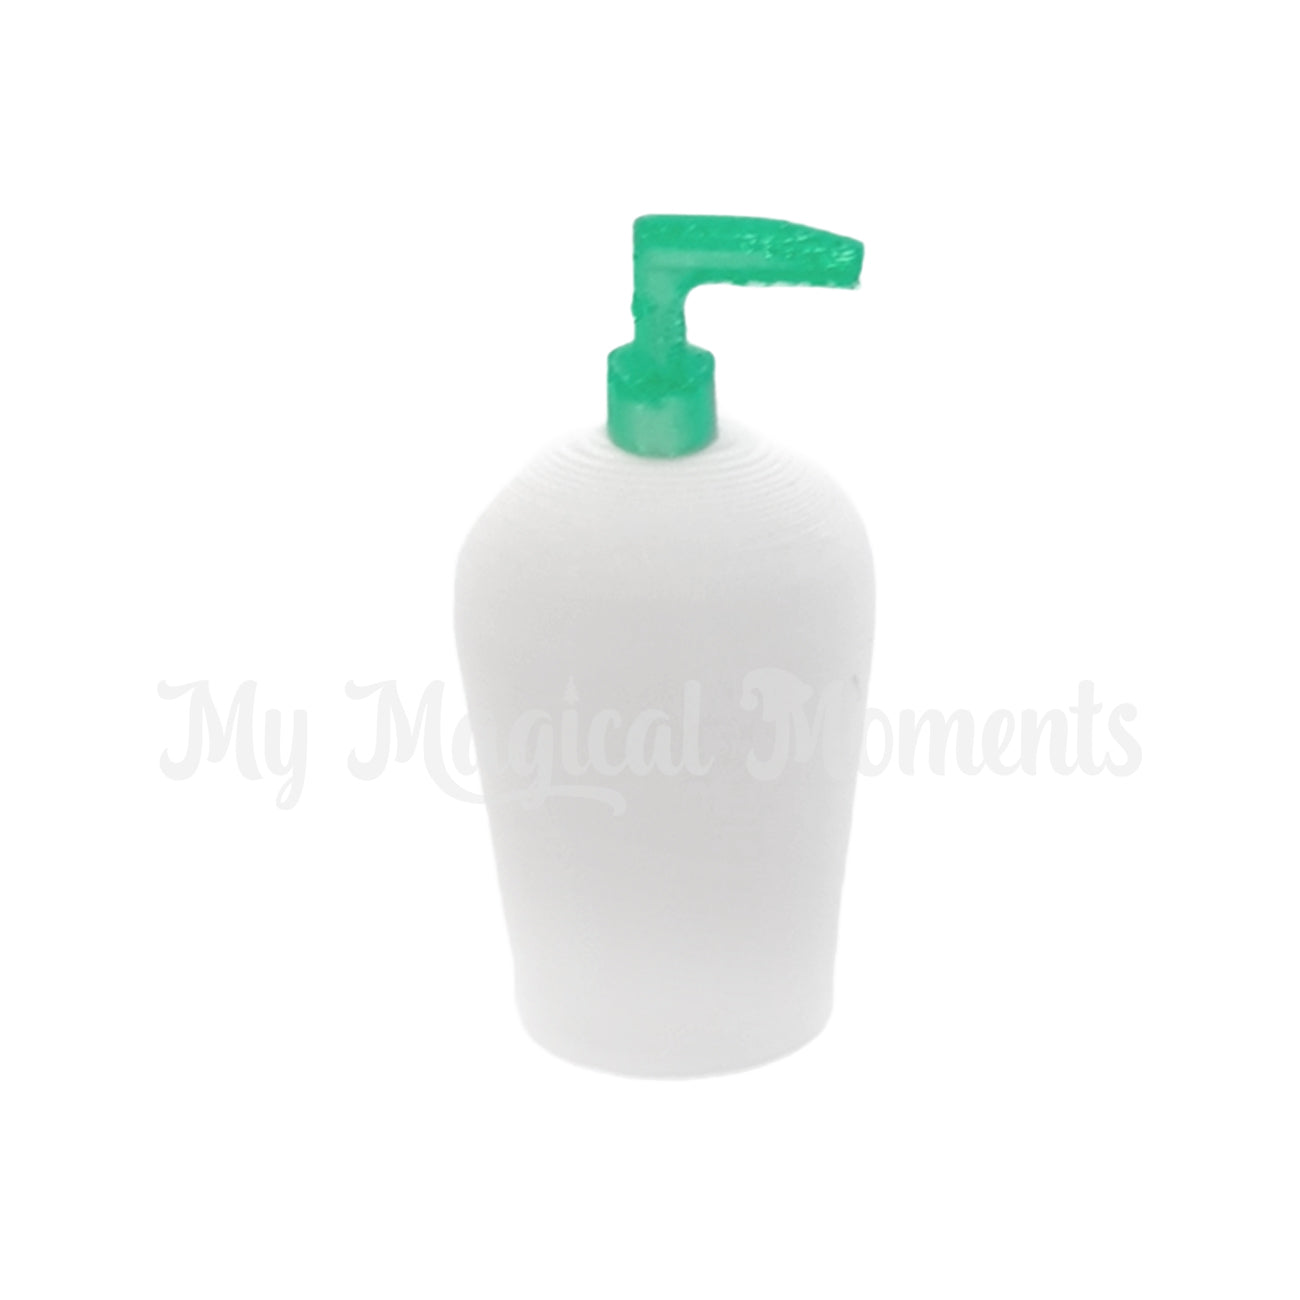 Miniature bottle of 3d printed sanitiser for elves